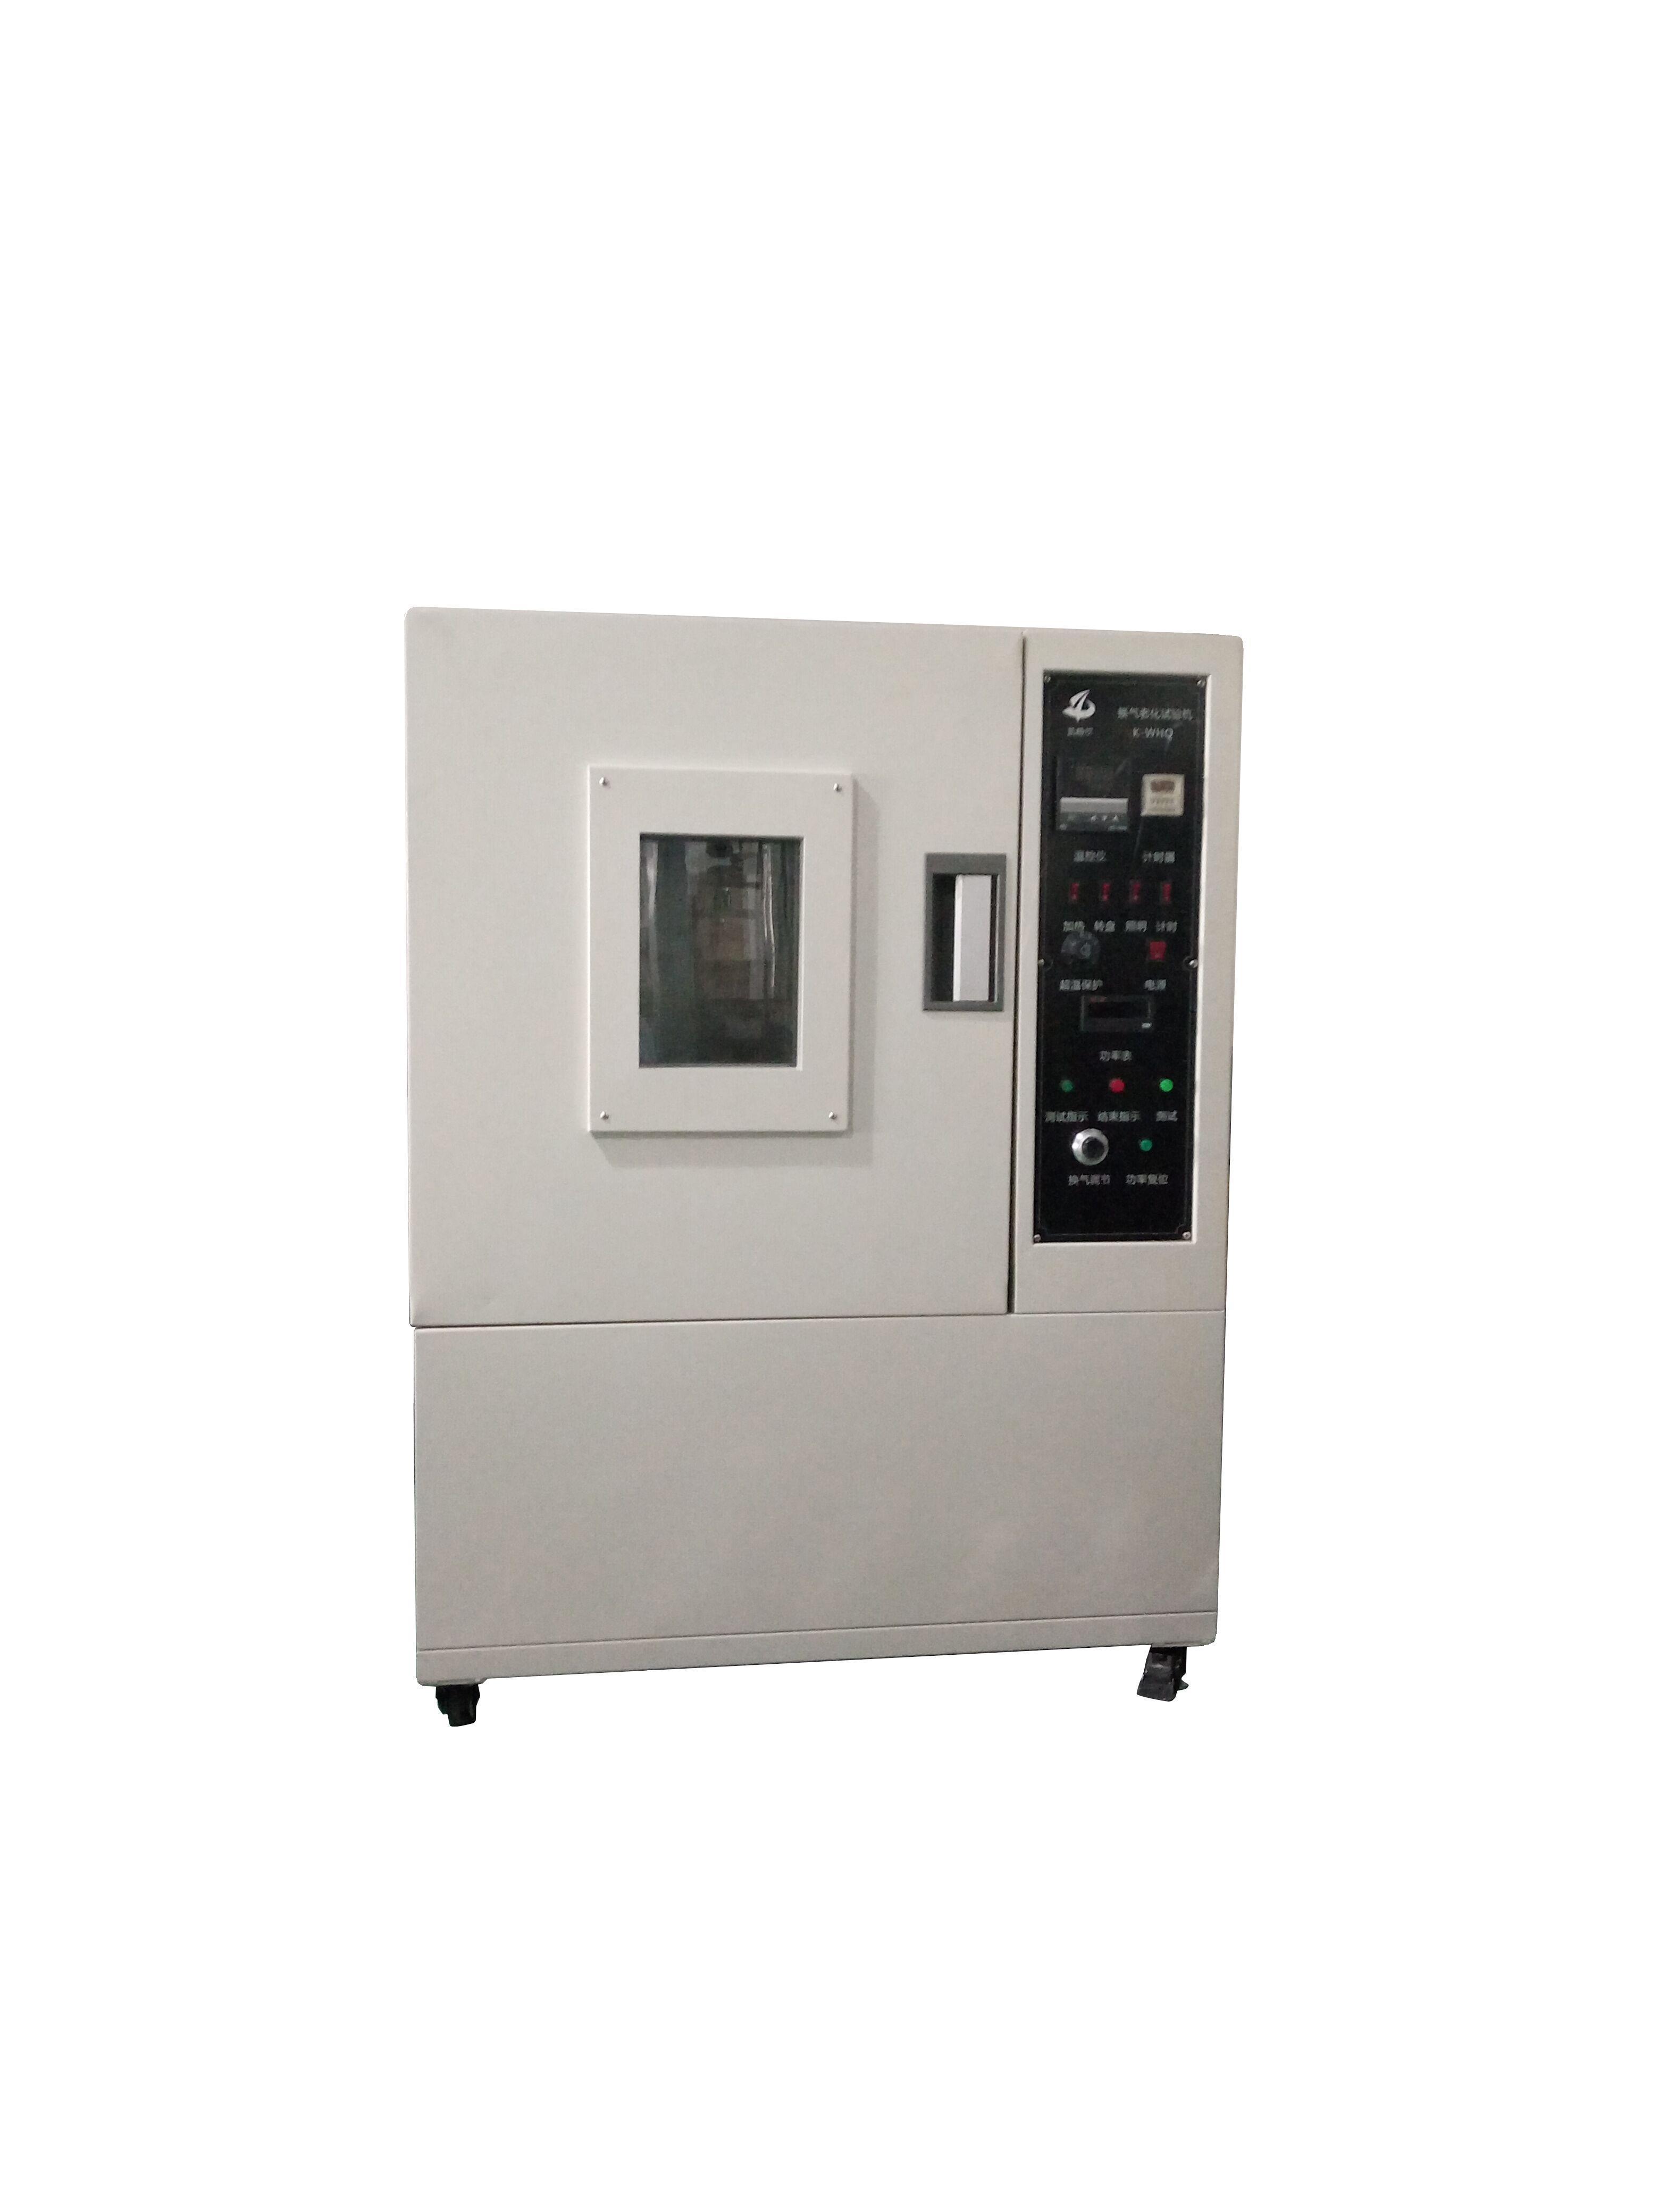 苏州市自然换气老化试验机厂家供应自然换气老化试验机